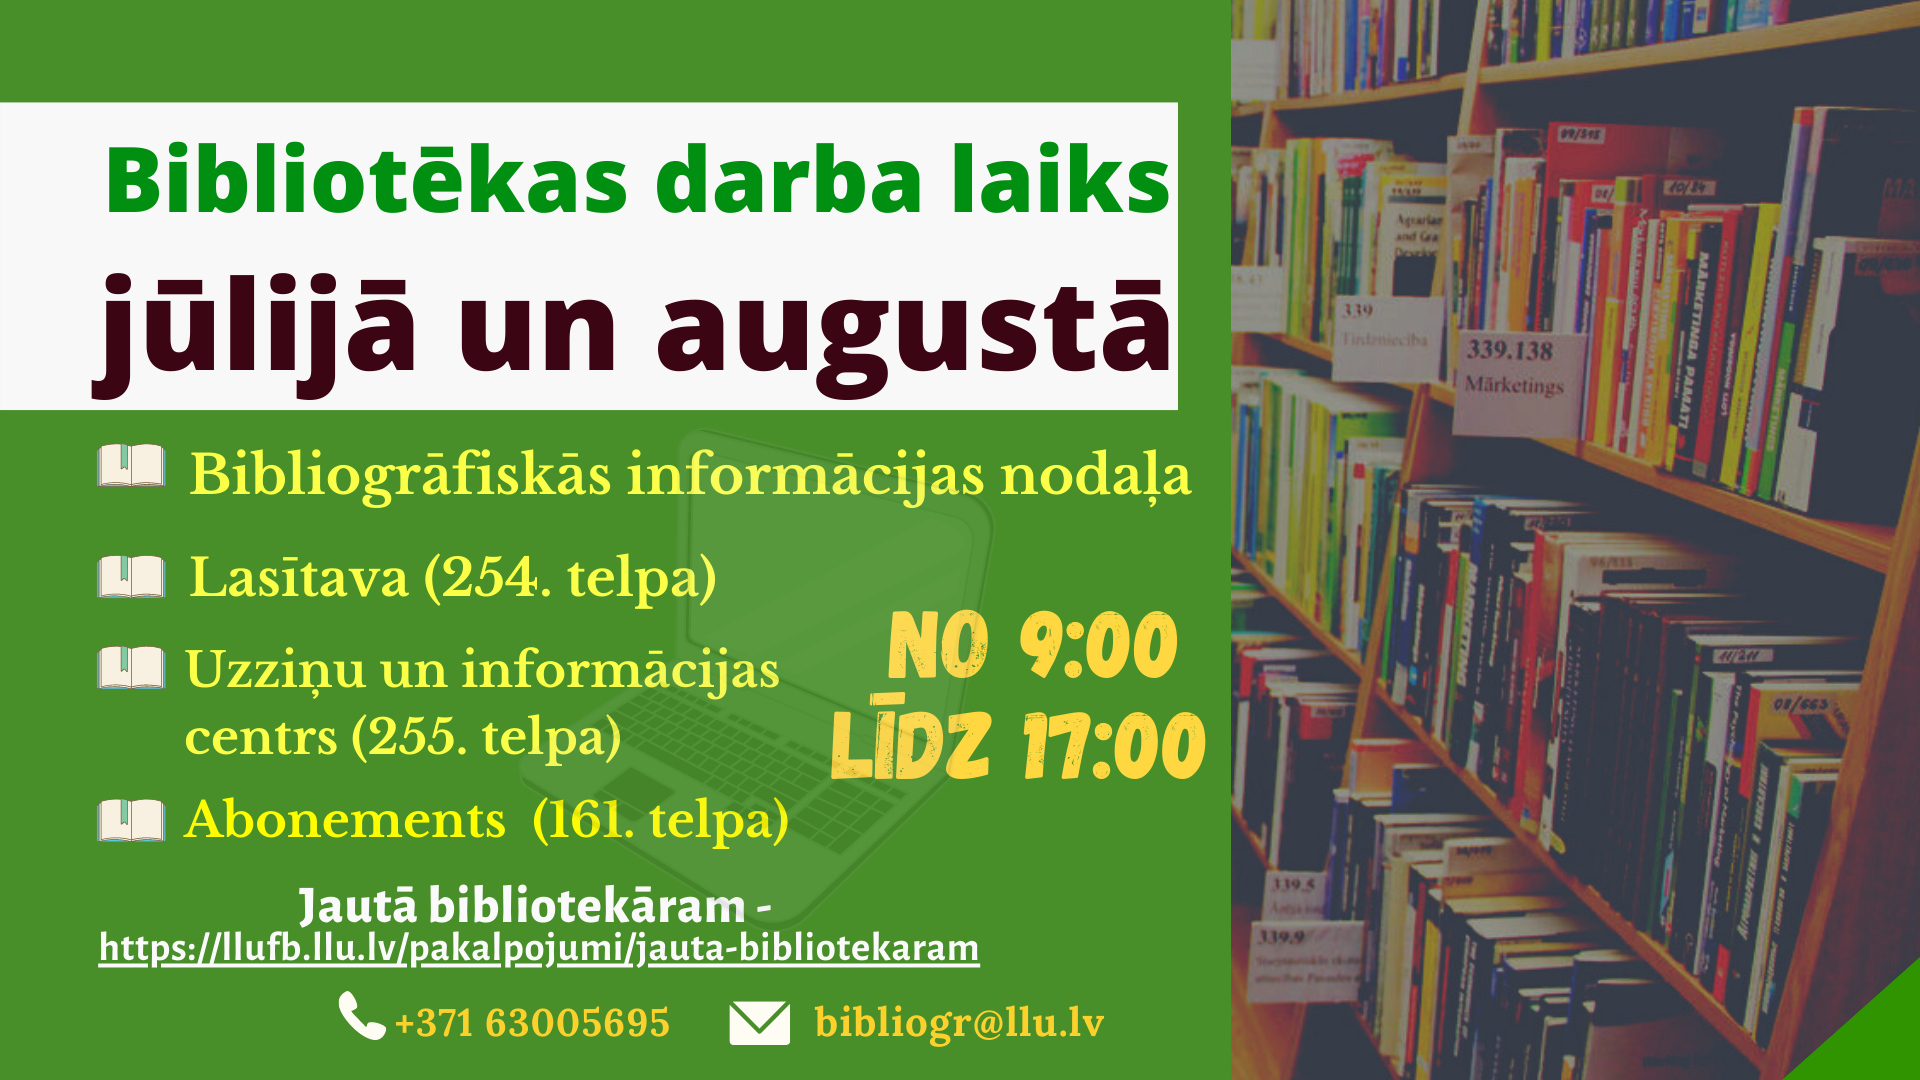 Latvijas Lauksaimniecības universitātes Fundamentālā bibliotēka jūlijā un augustā atvērta no 9:00 līdz 17:00